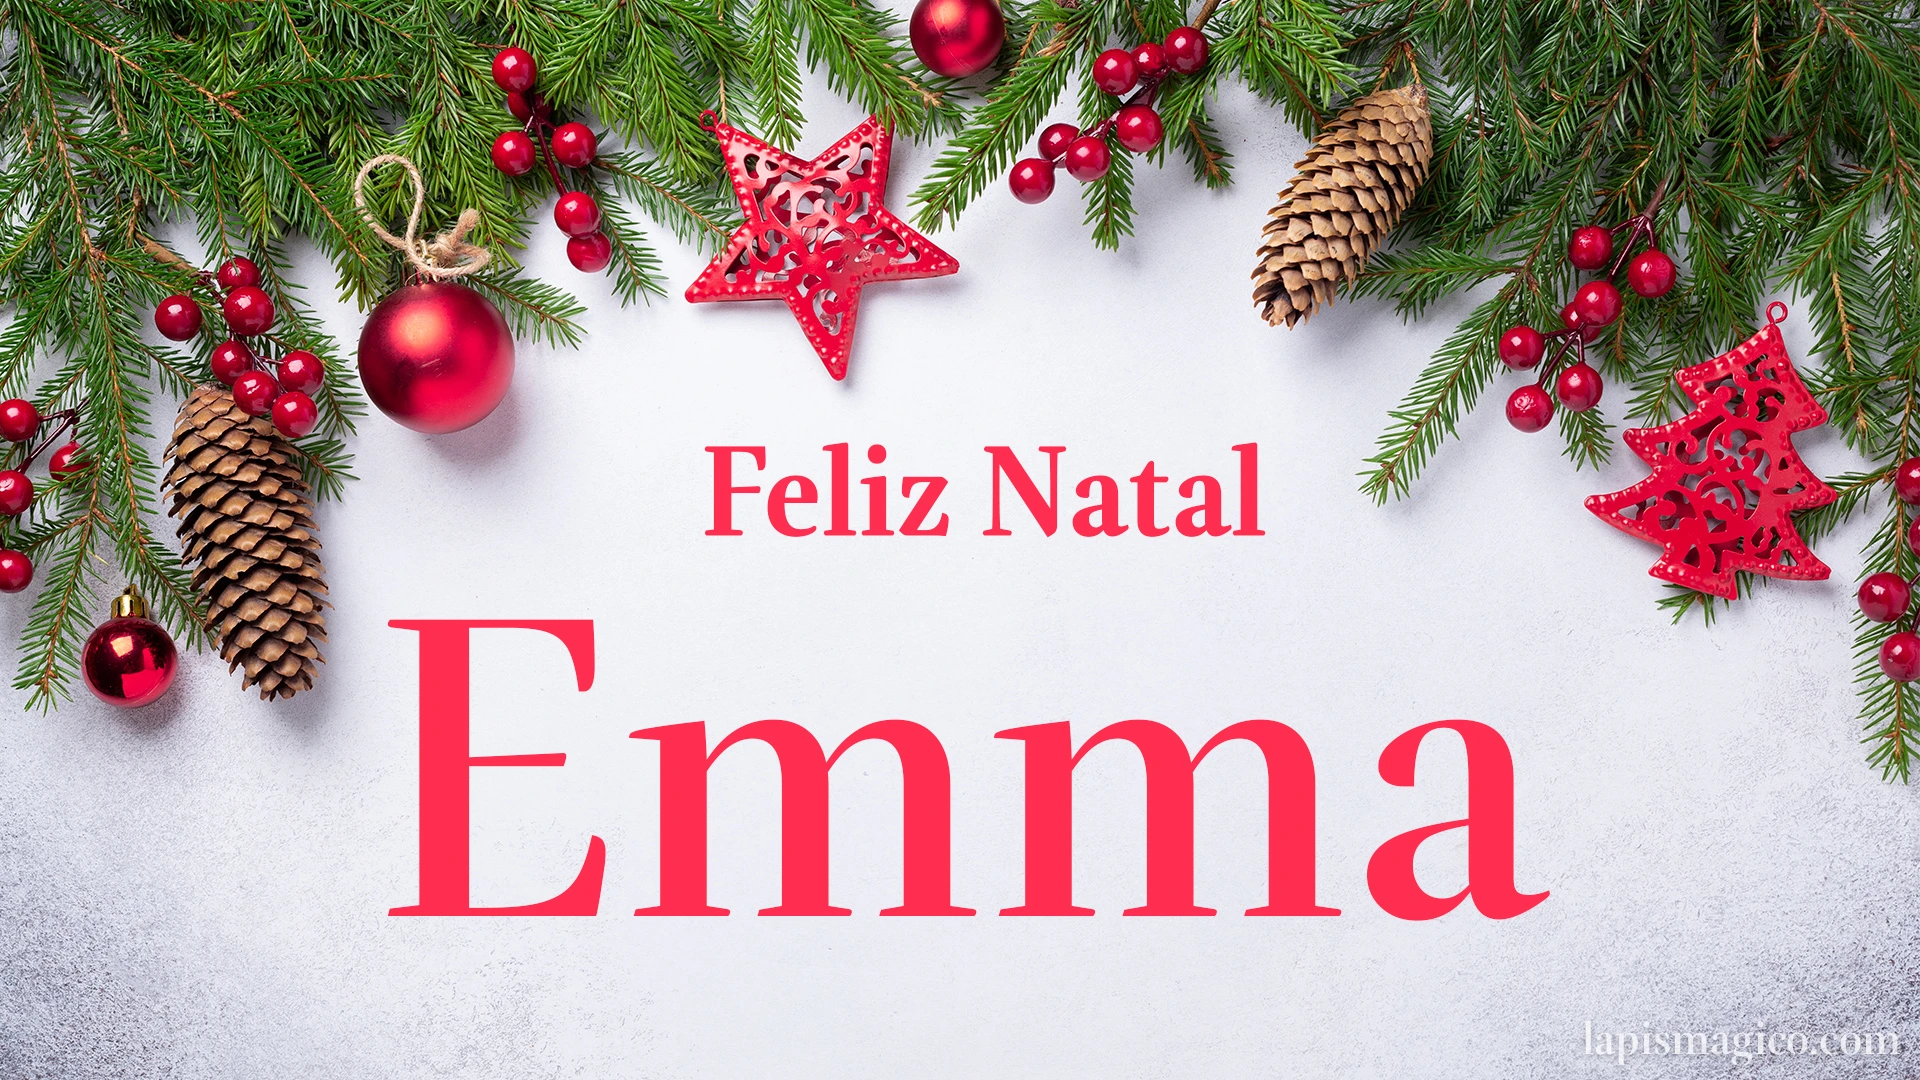 Oh Emma, cinco postais de Feliz Natal Postal com o teu nome